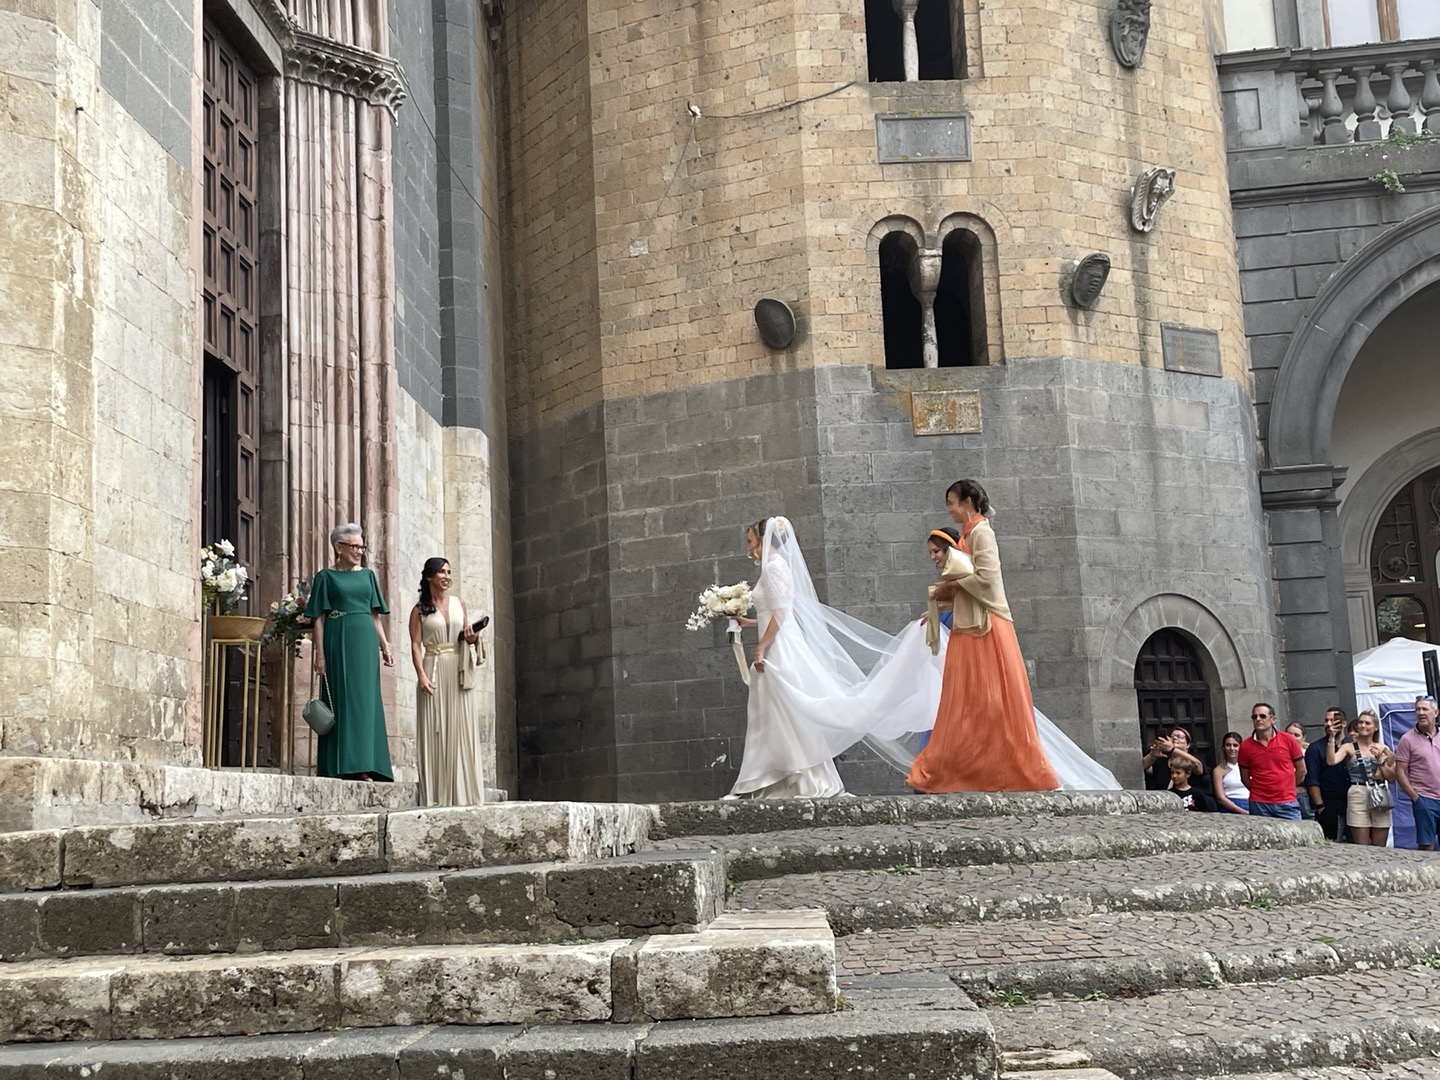 < 오르비에토에서 우연히 보게 된 결혼식에서 신부와 신부의 어머니가 입장을 준비하고 있다 - 출처: 통신원 촬영 >